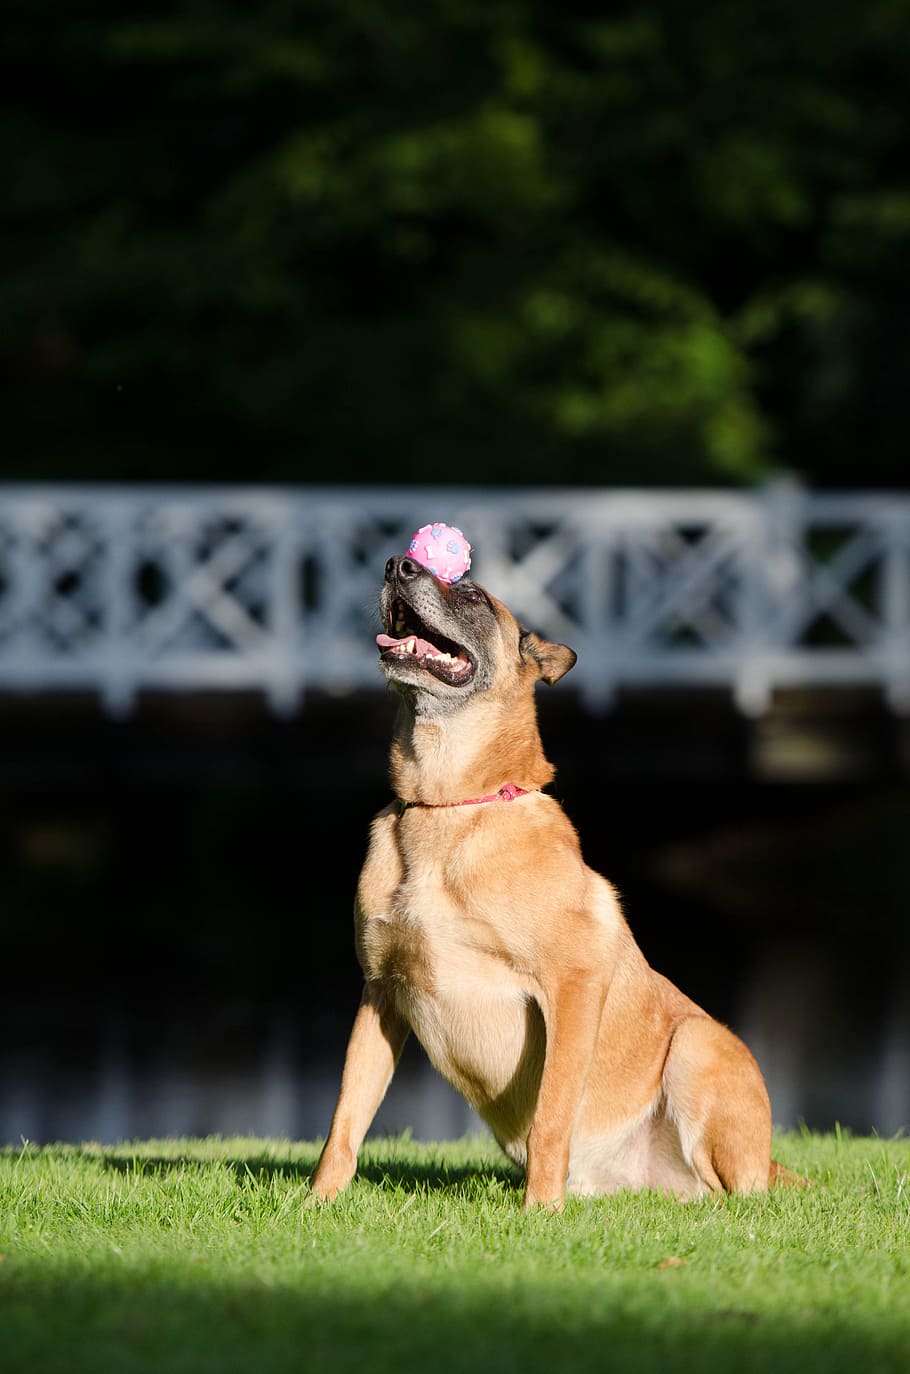 trik anjing, keseimbangan, bola pada moncong, malinois, trik pertunjukan anjing, anjing gembala belgia, trik, anjing menunjukkan trik, musim panas, lucu